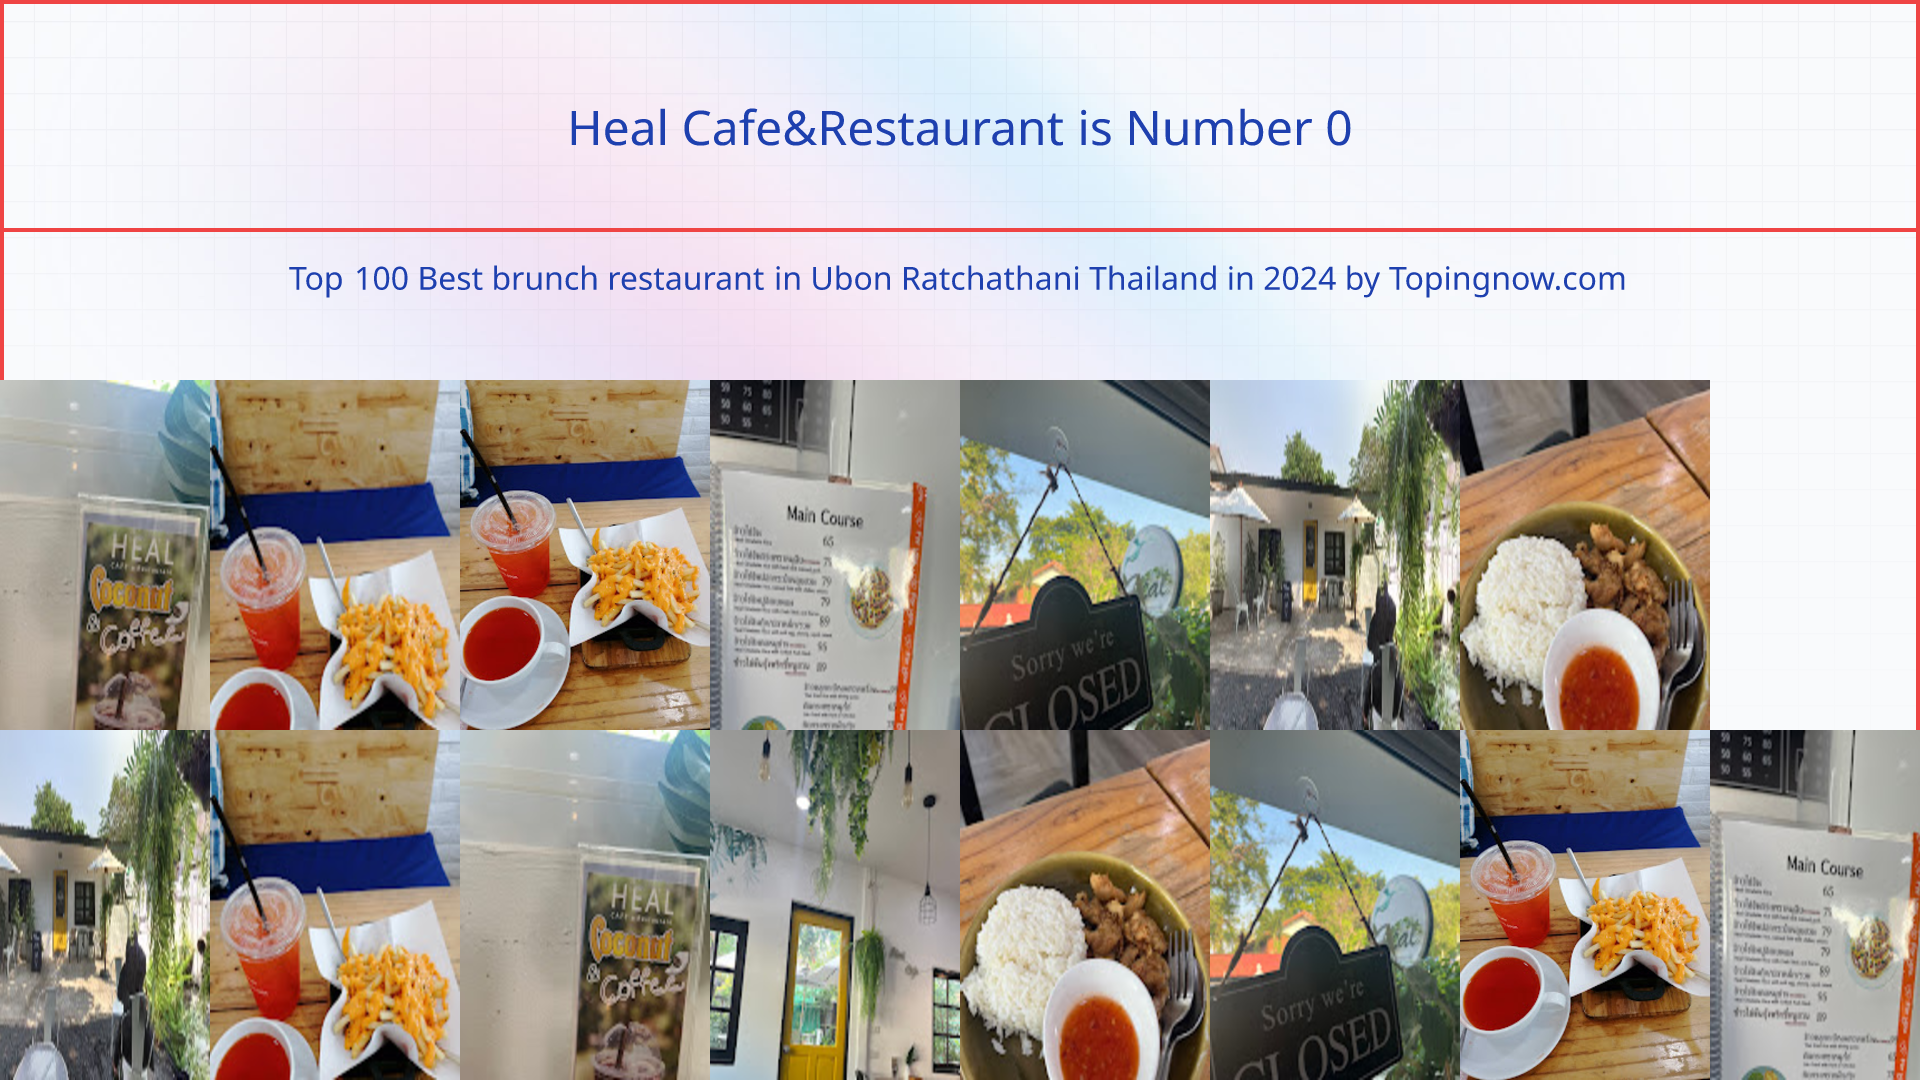 Heal Cafe&Restaurant: Top 100 Best brunch restaurant in Ubon Ratchathani Thailand in 2024